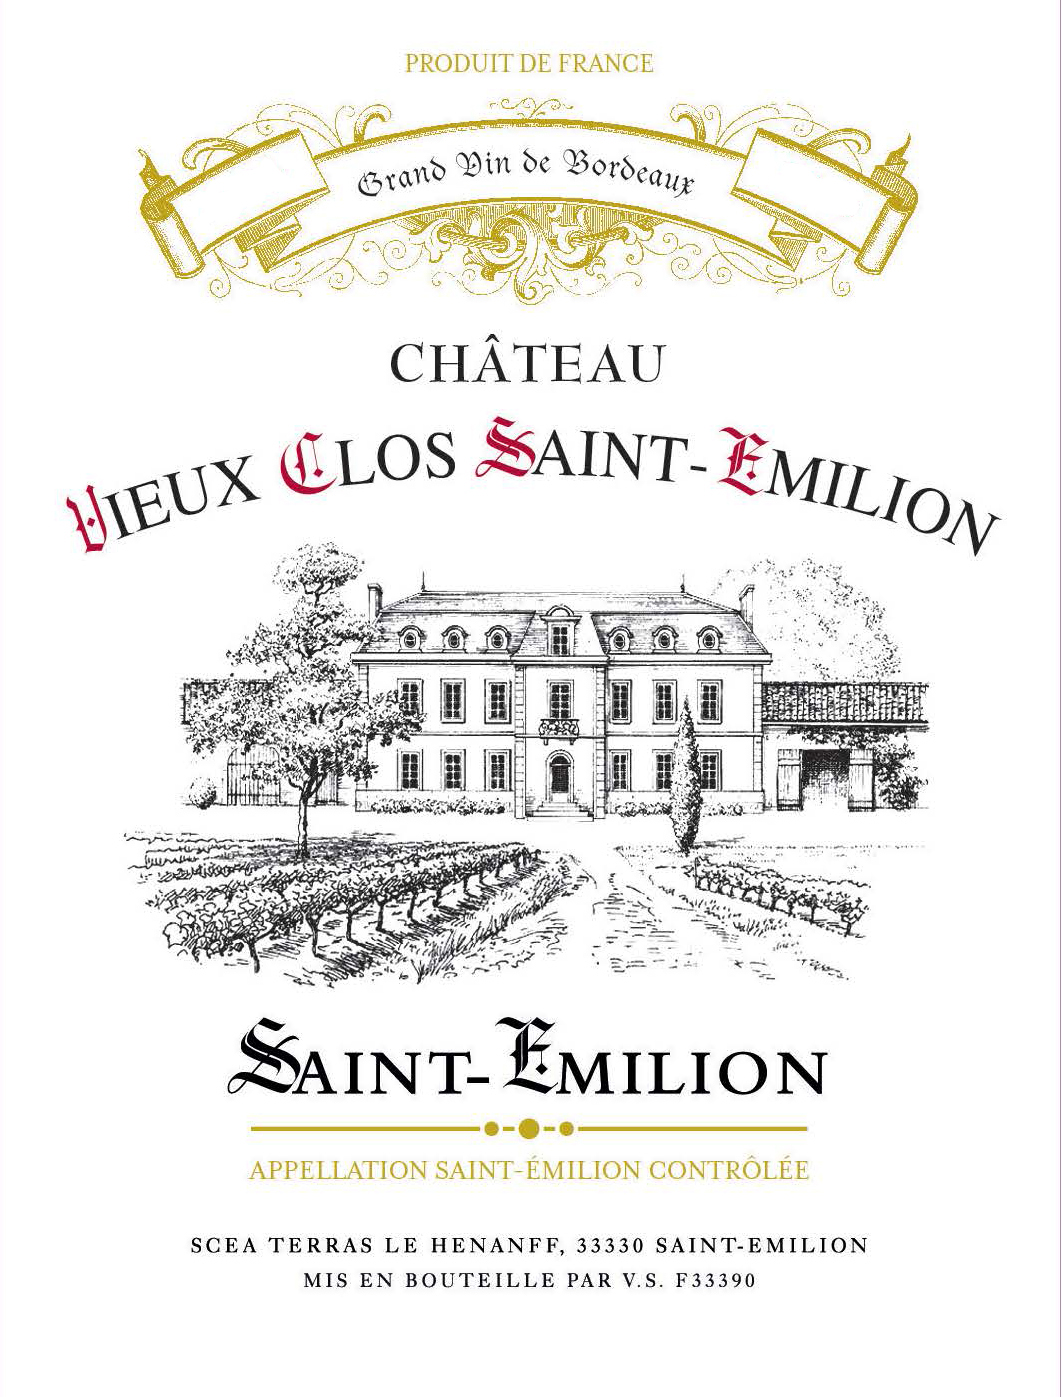 Château Vieux Clos Saint-Emilion label